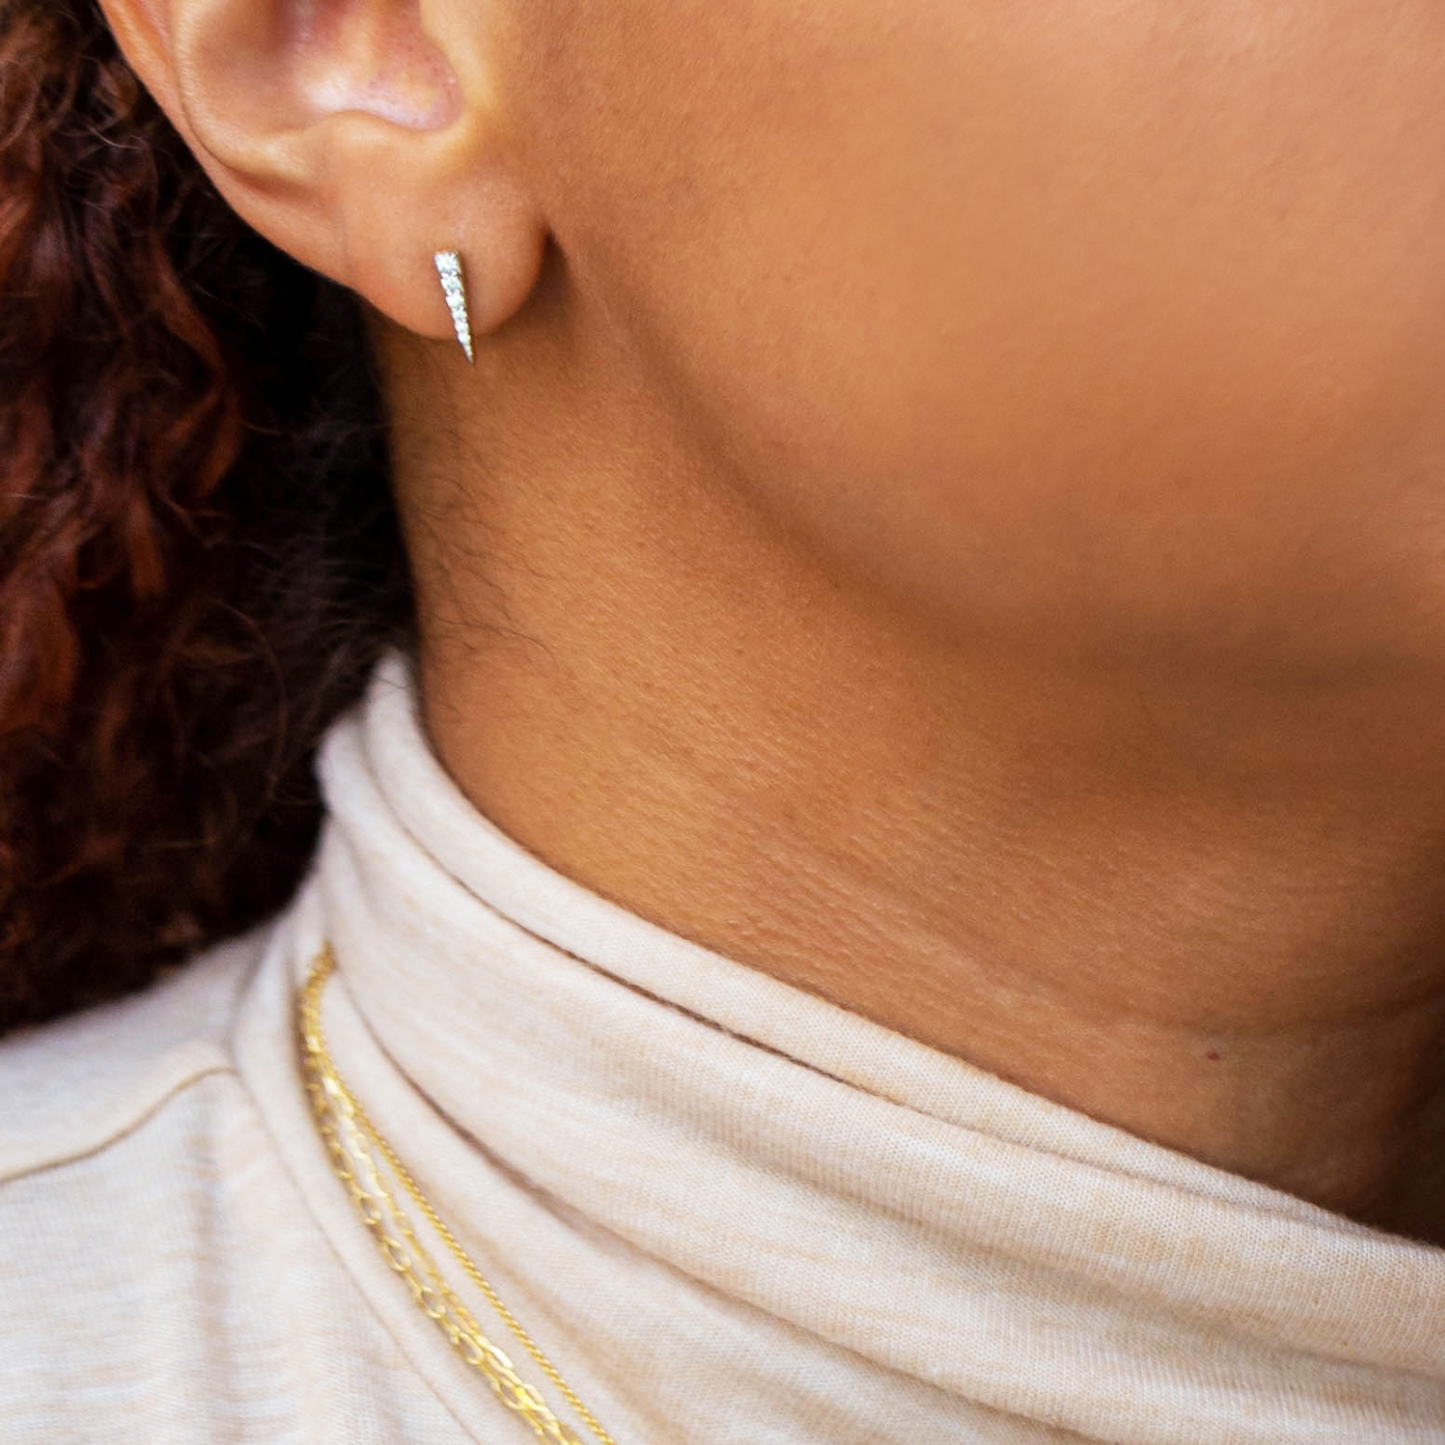 Demi Diamond Spear Stud Earrings Set On Ear